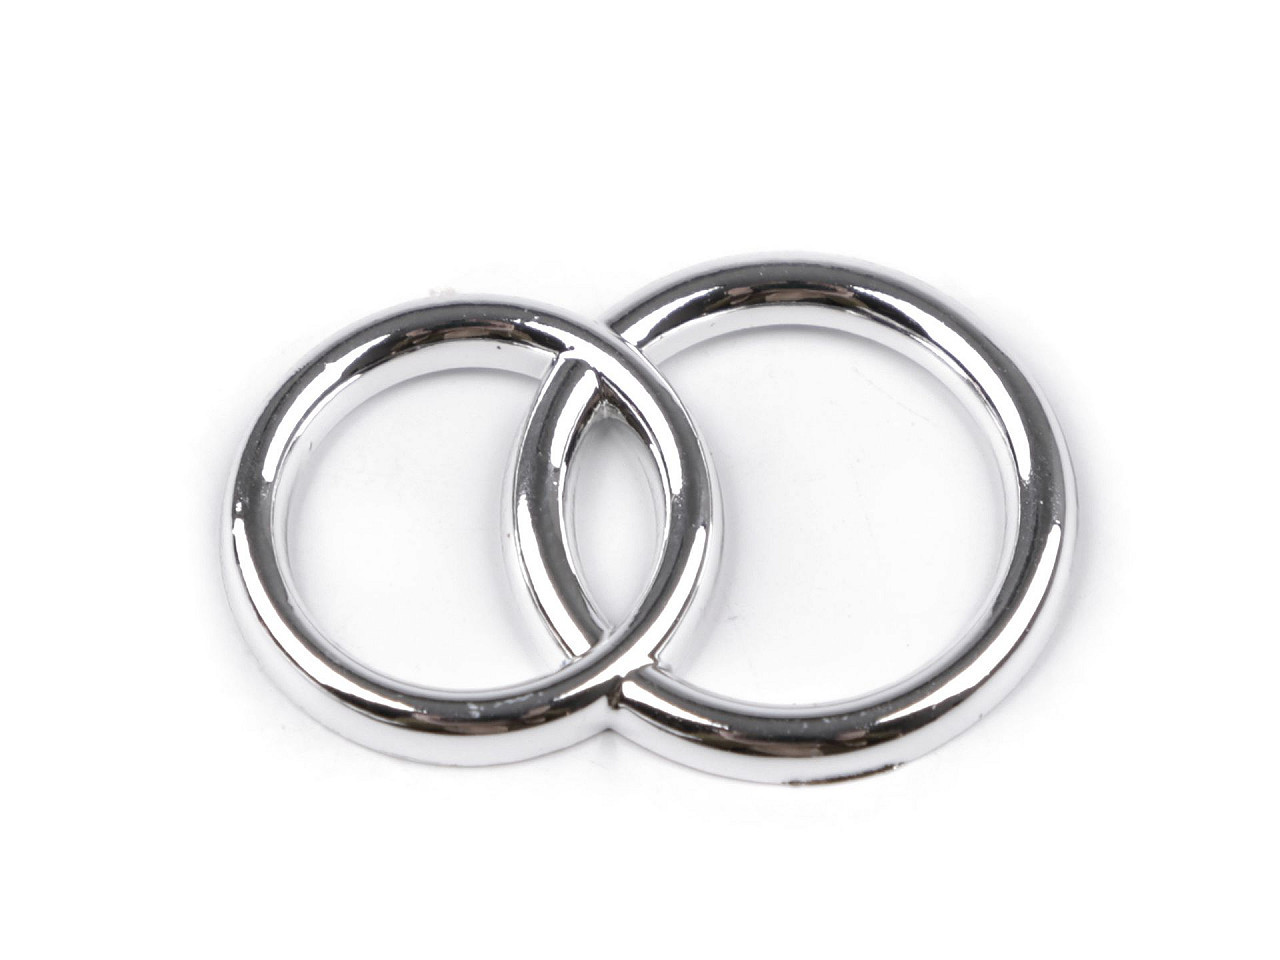 Dekorační prsteny, barva 2 stříbrná